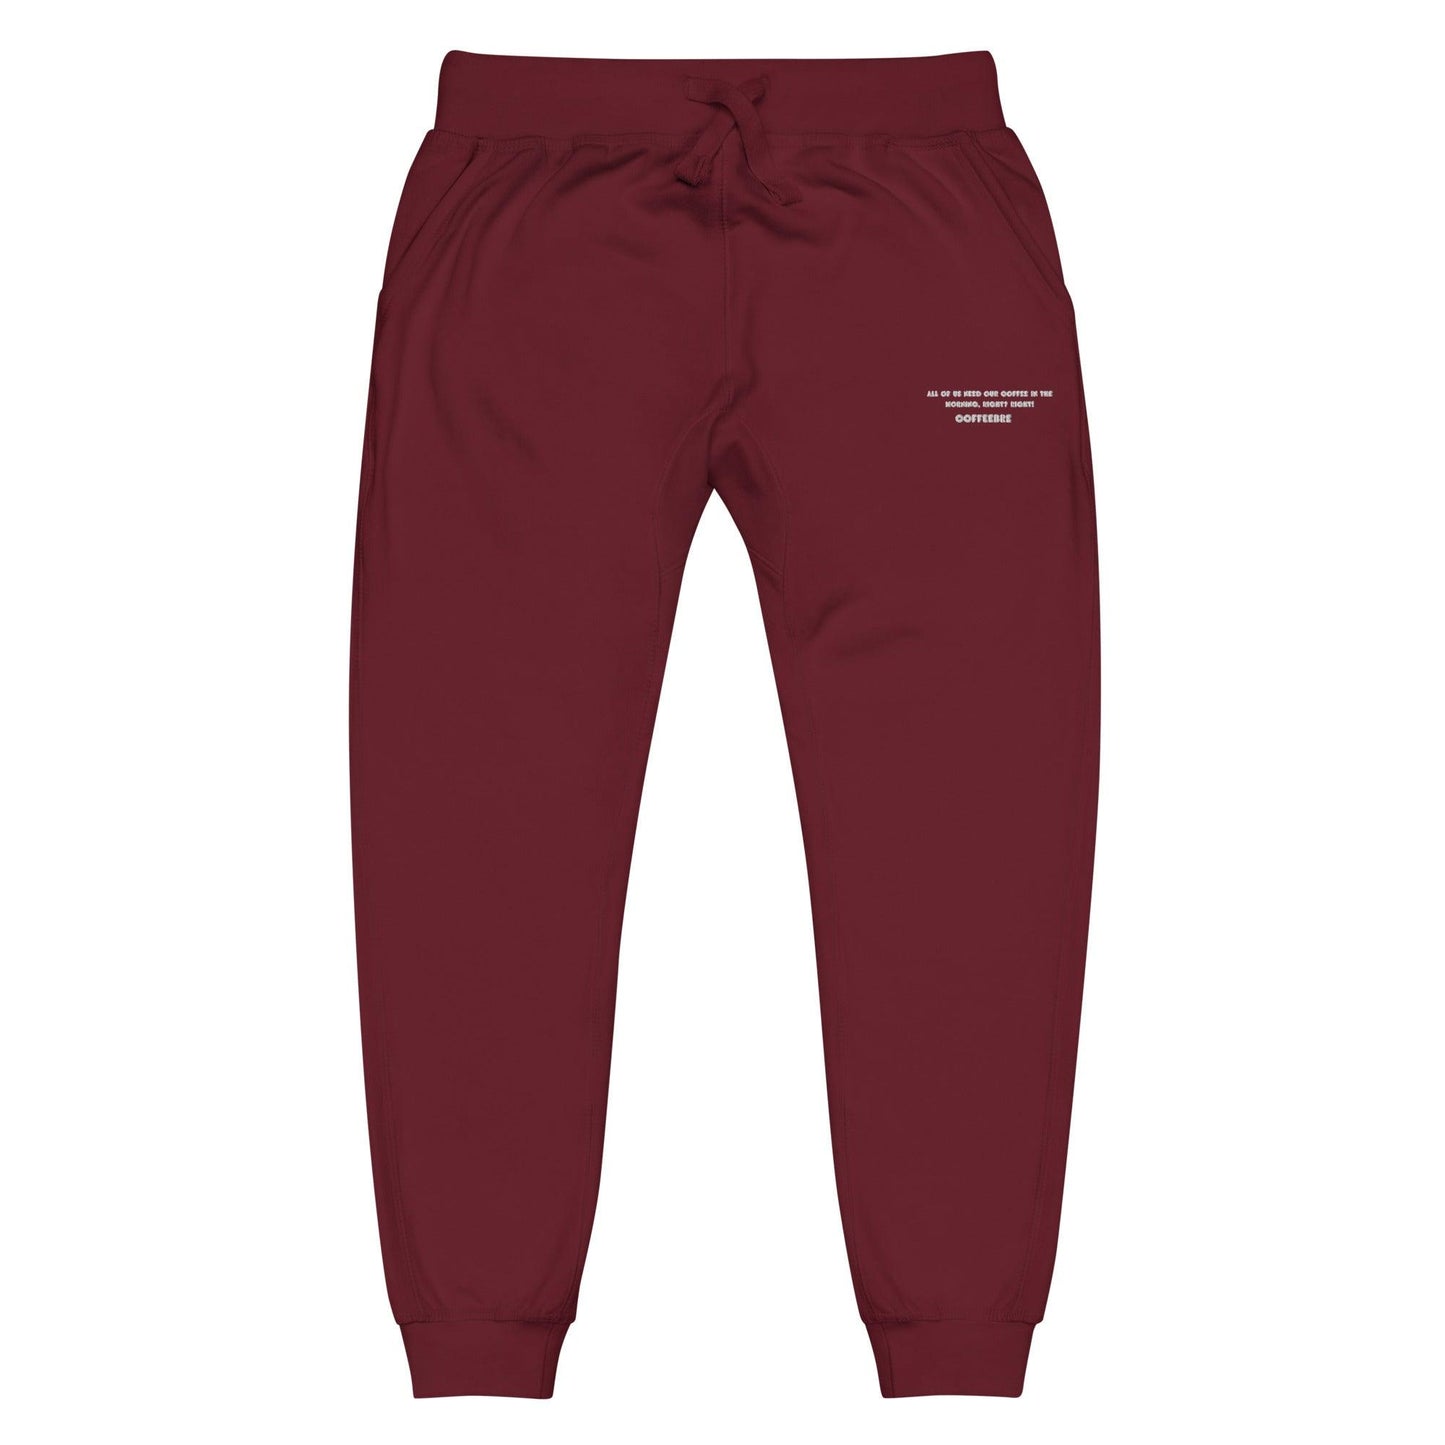 Unisex Embroidered Loungewear Fleece Sweatpants